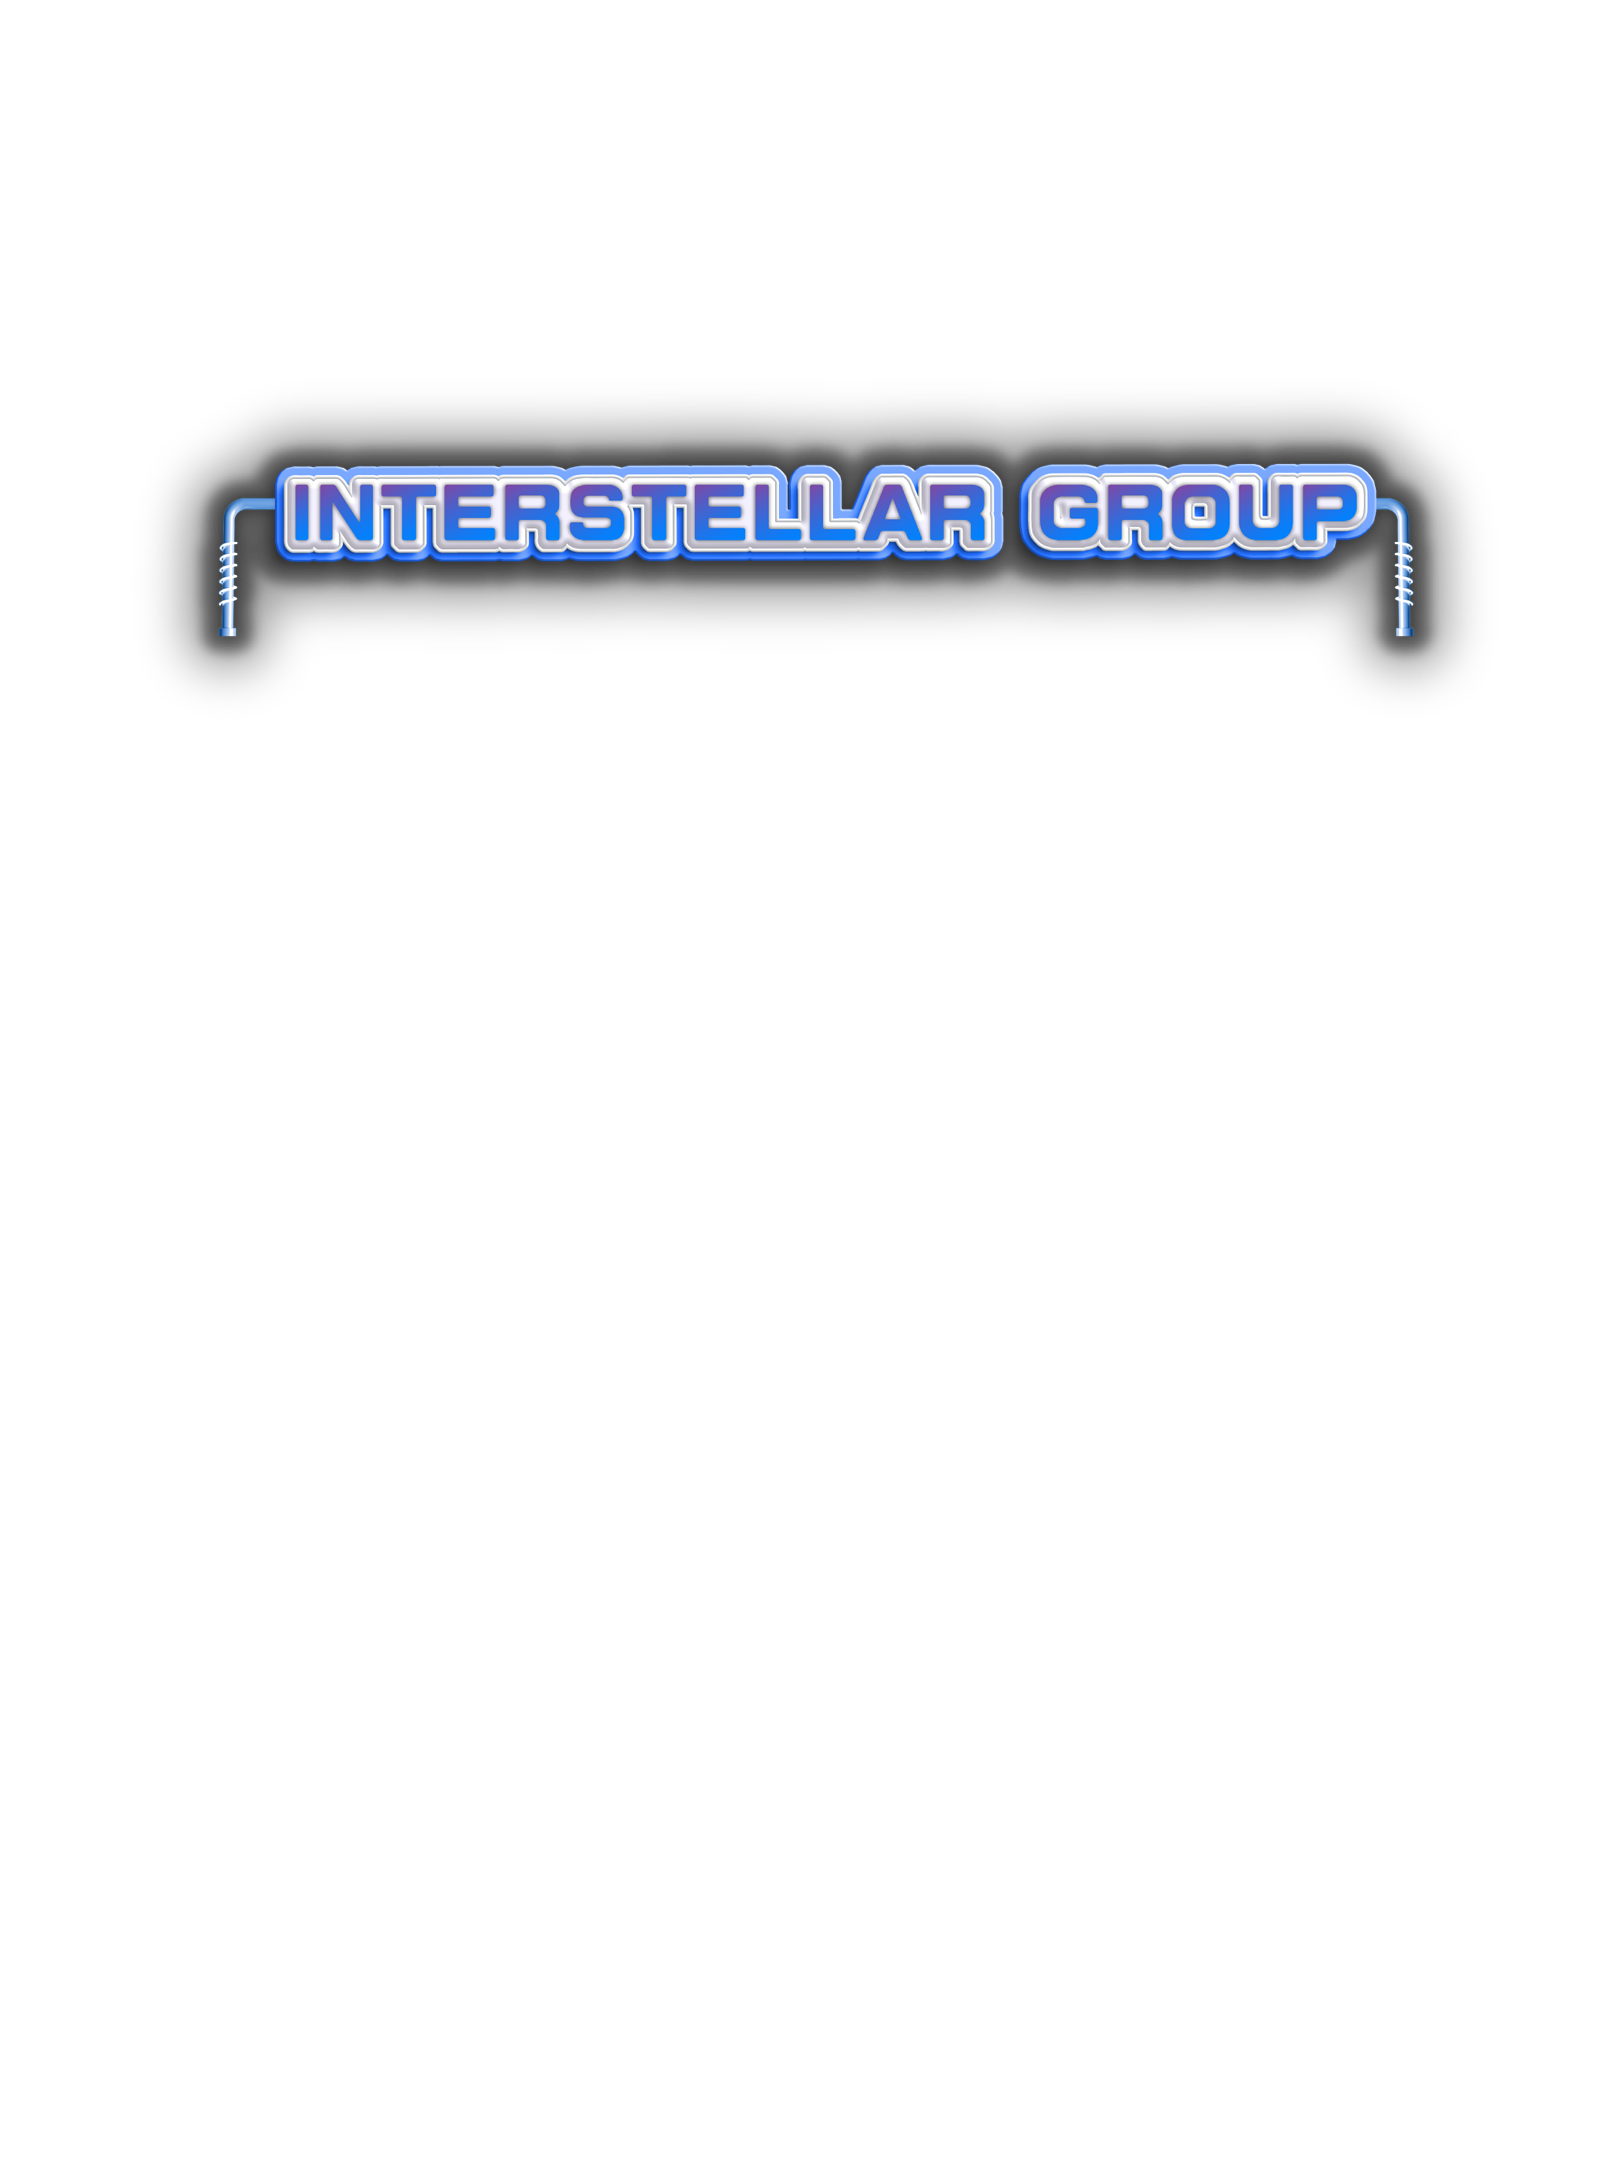 InterStellar Group